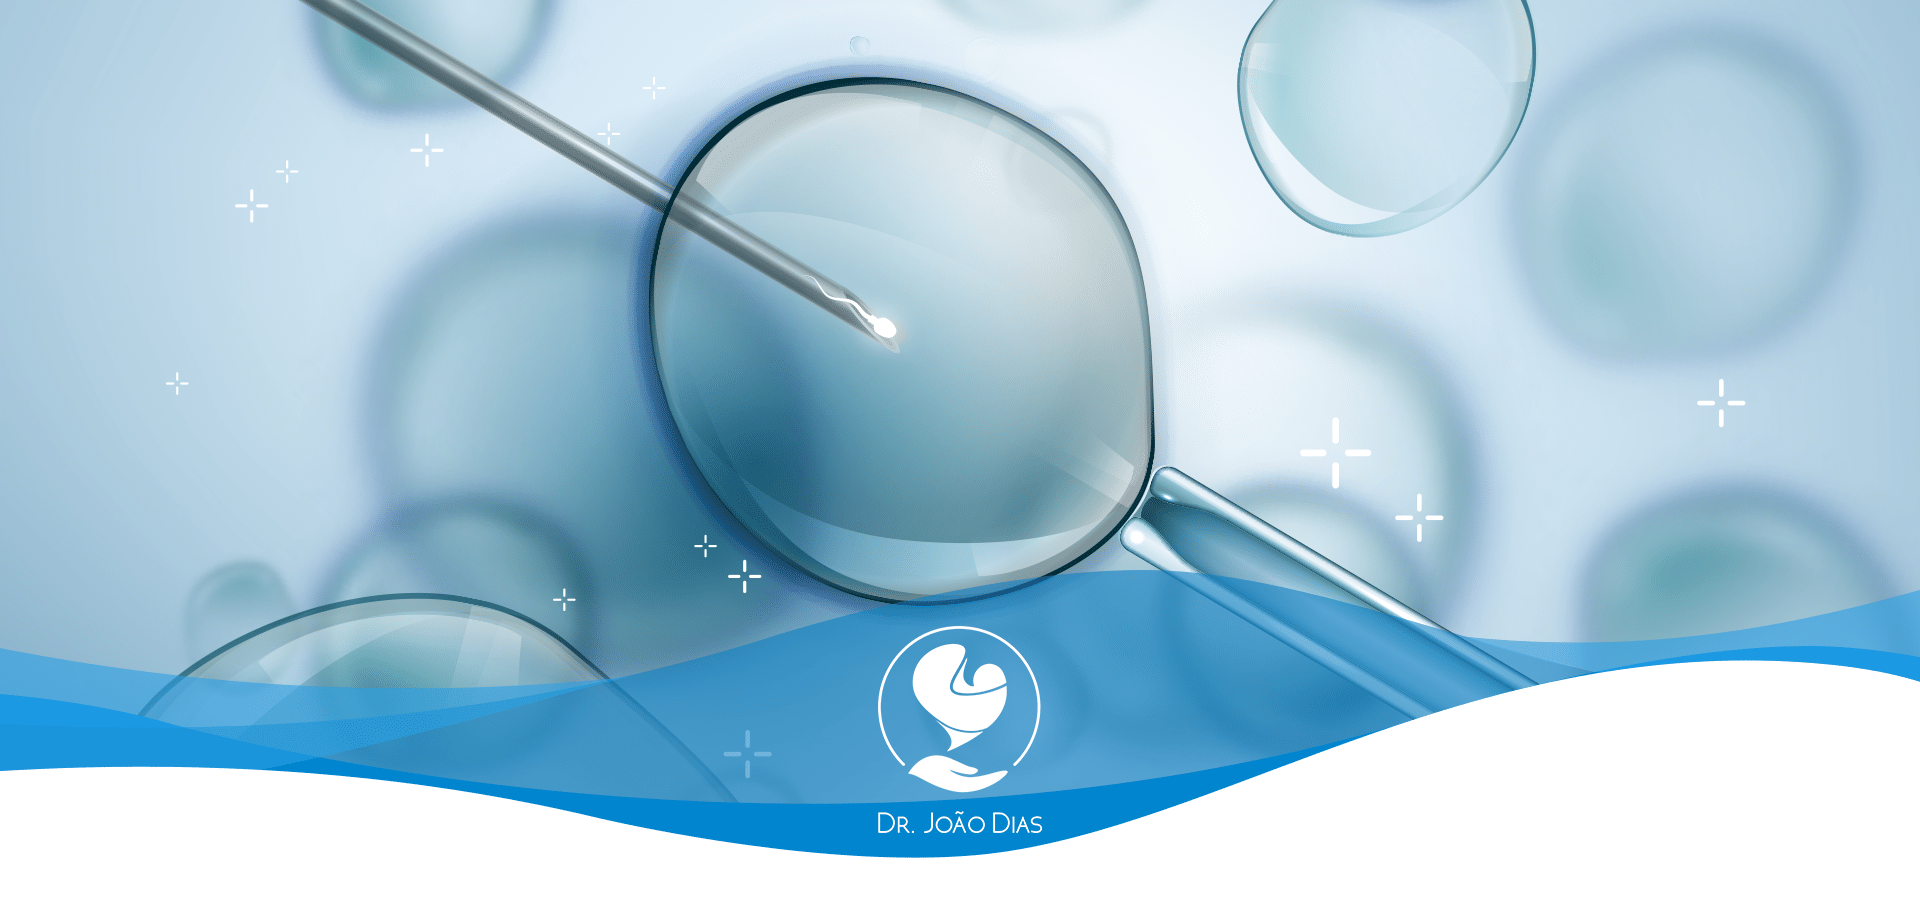 Fertilização in vitro (FIV): qual a taxa de sucesso da técnica?